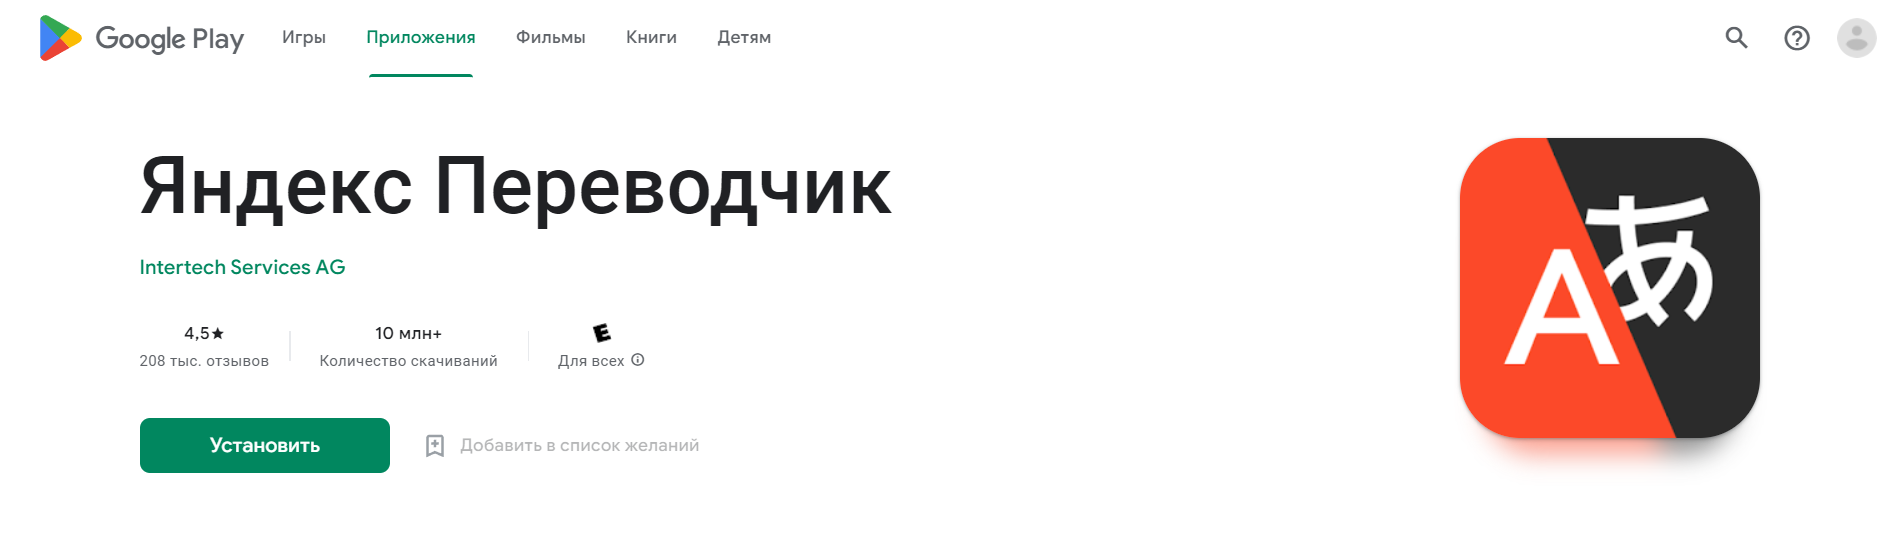 Скачать Яндекс переводчик для Android с Google Play